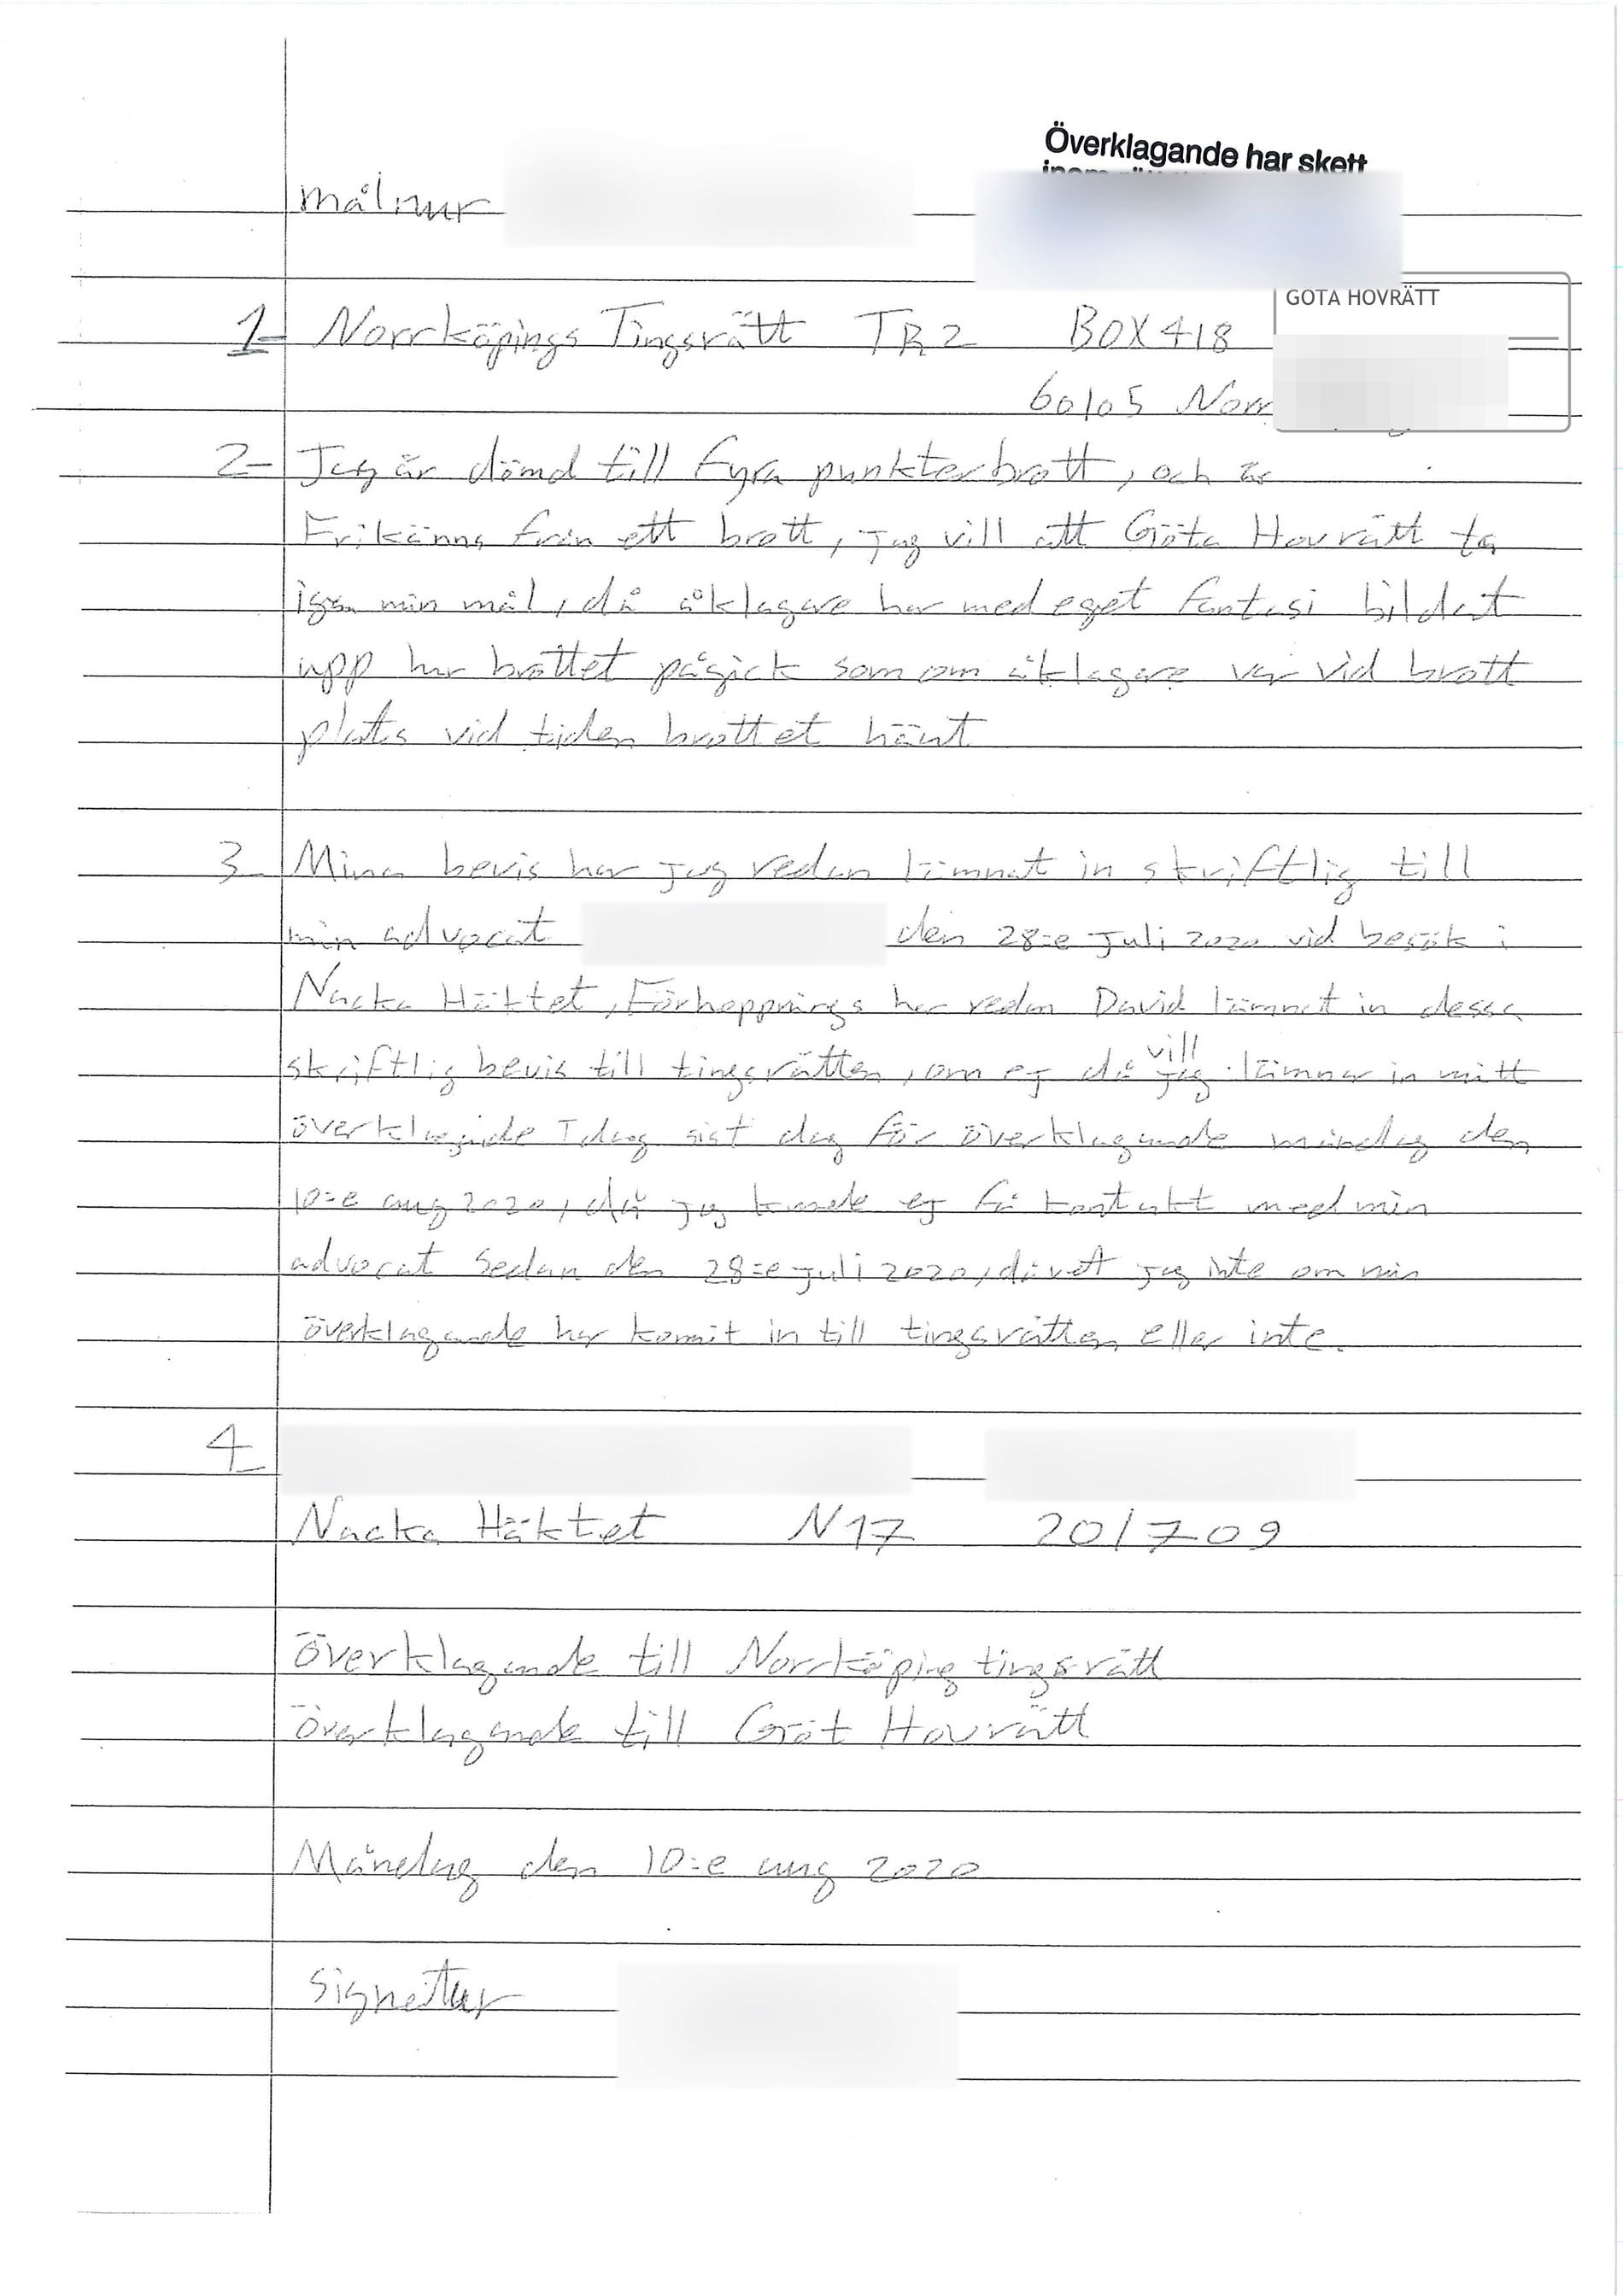 Mannens brev från häktet i Nacka. 